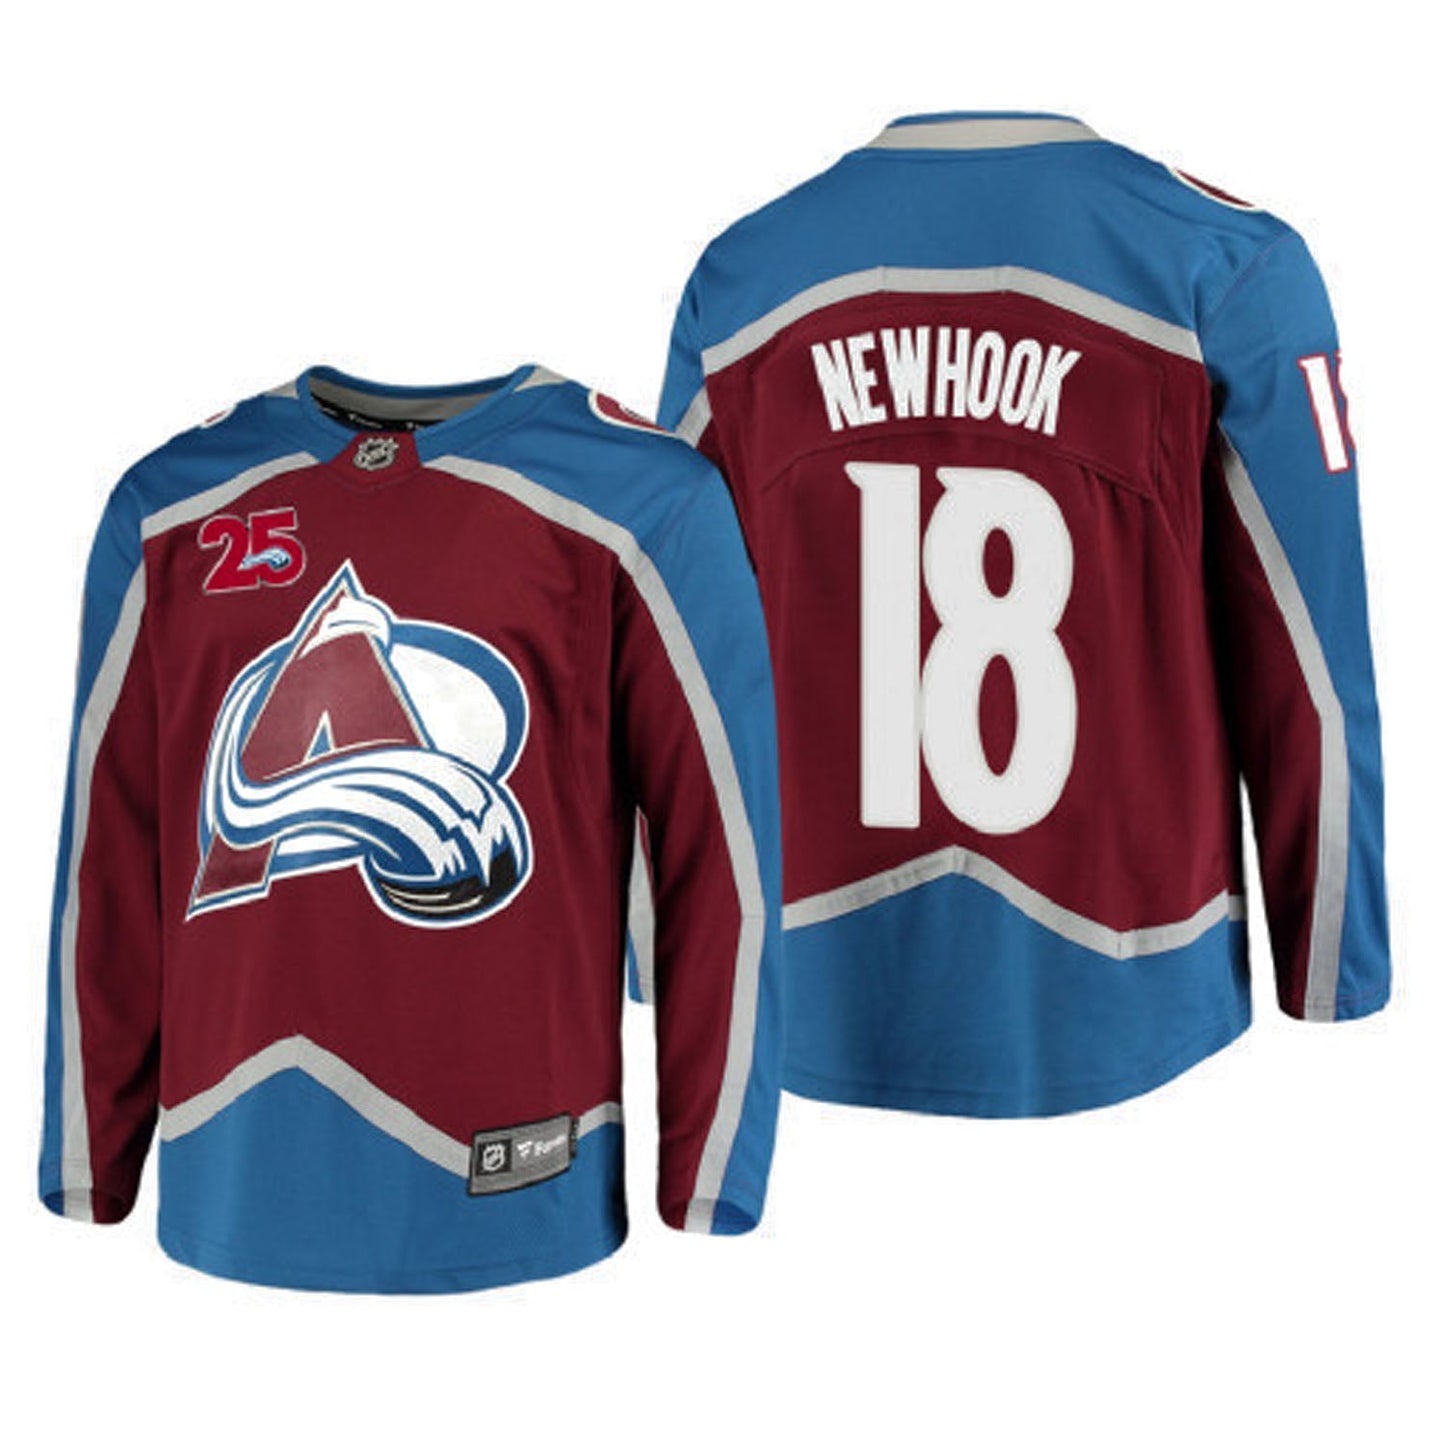 NHL Alex Newhook Colorado Avalanche 18 Jersey